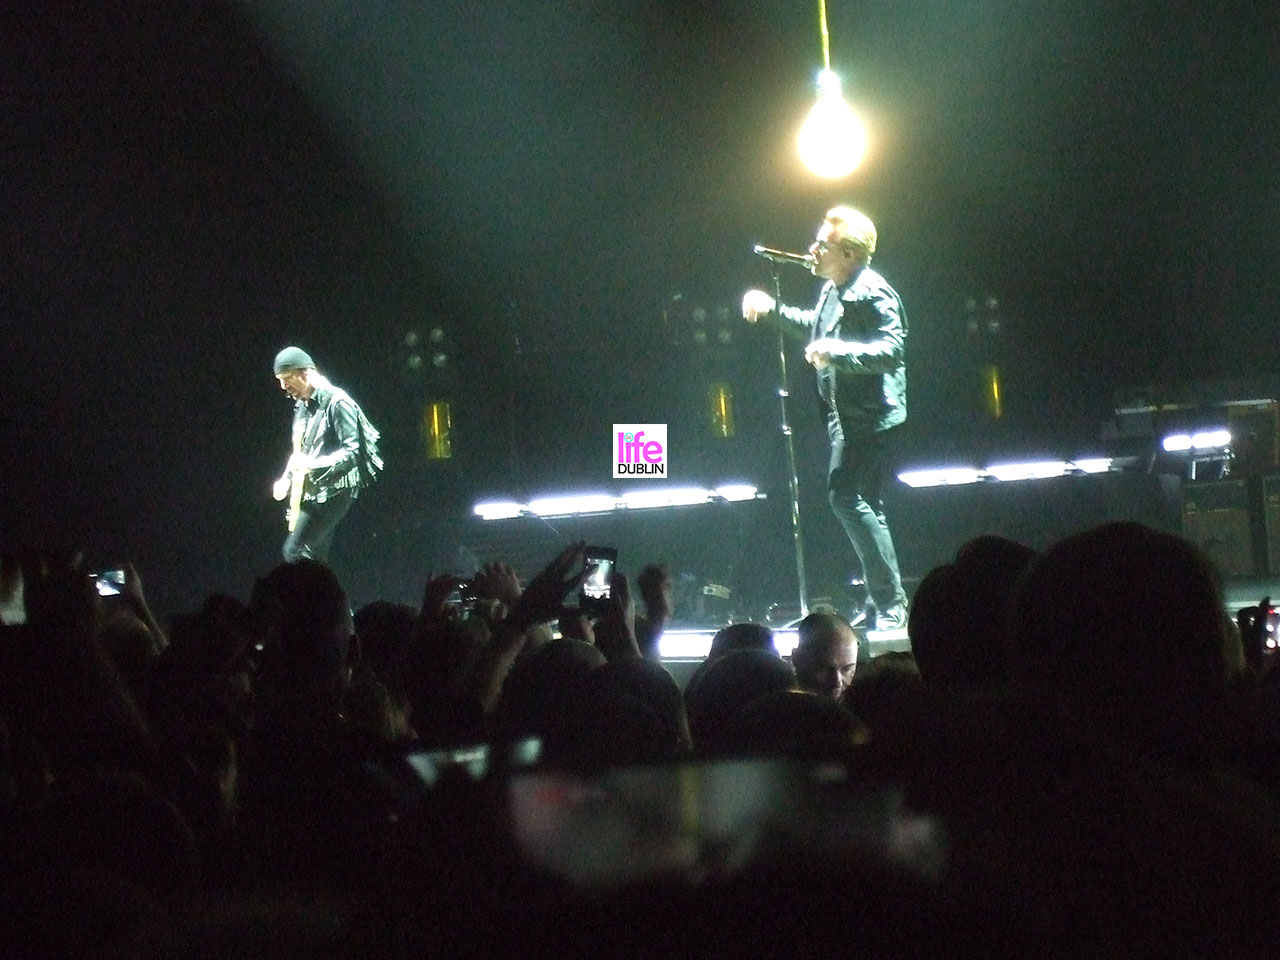 Concert U2 Bono Vox live on stage